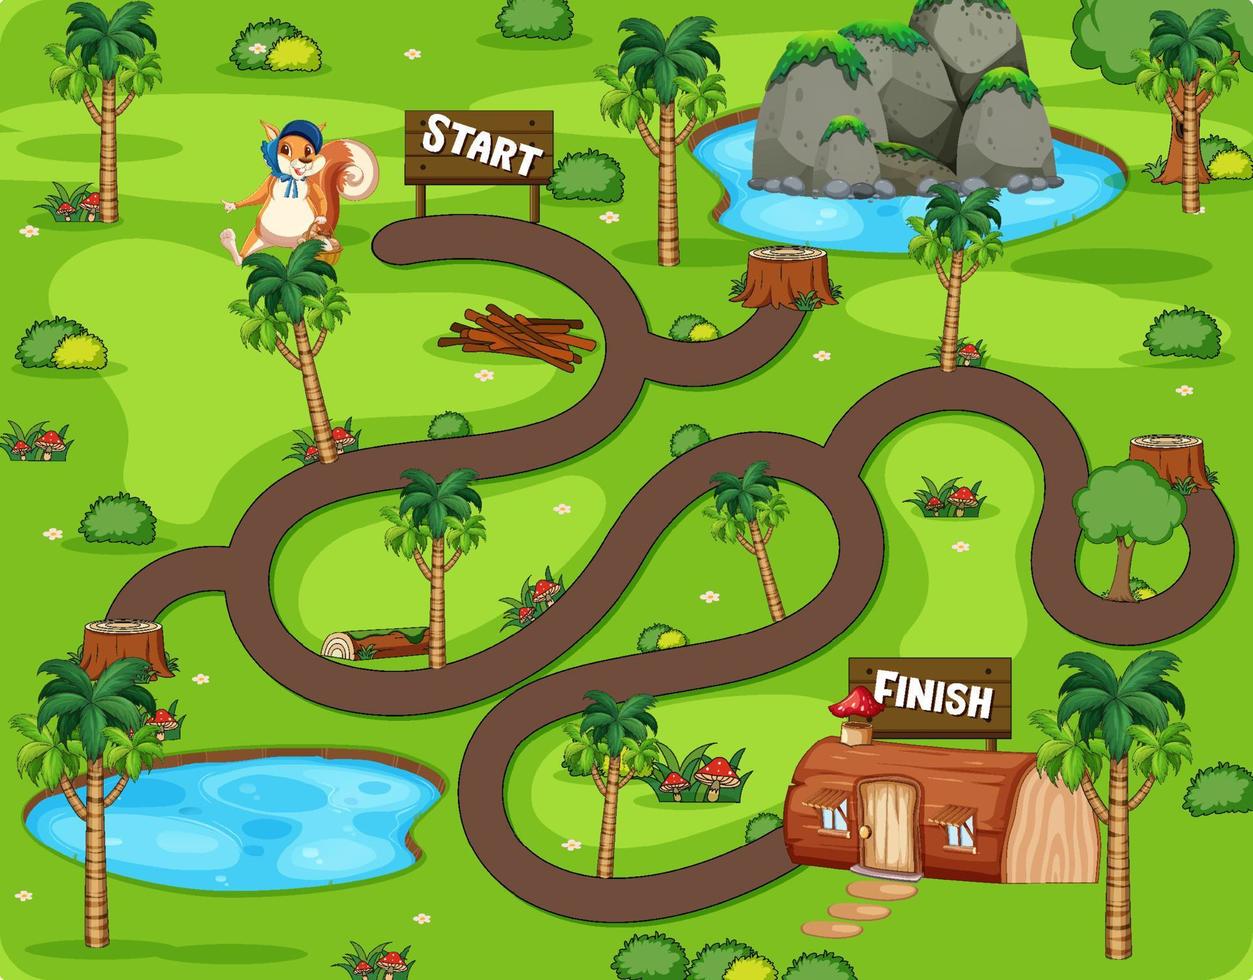 A squirrel maze games template vector